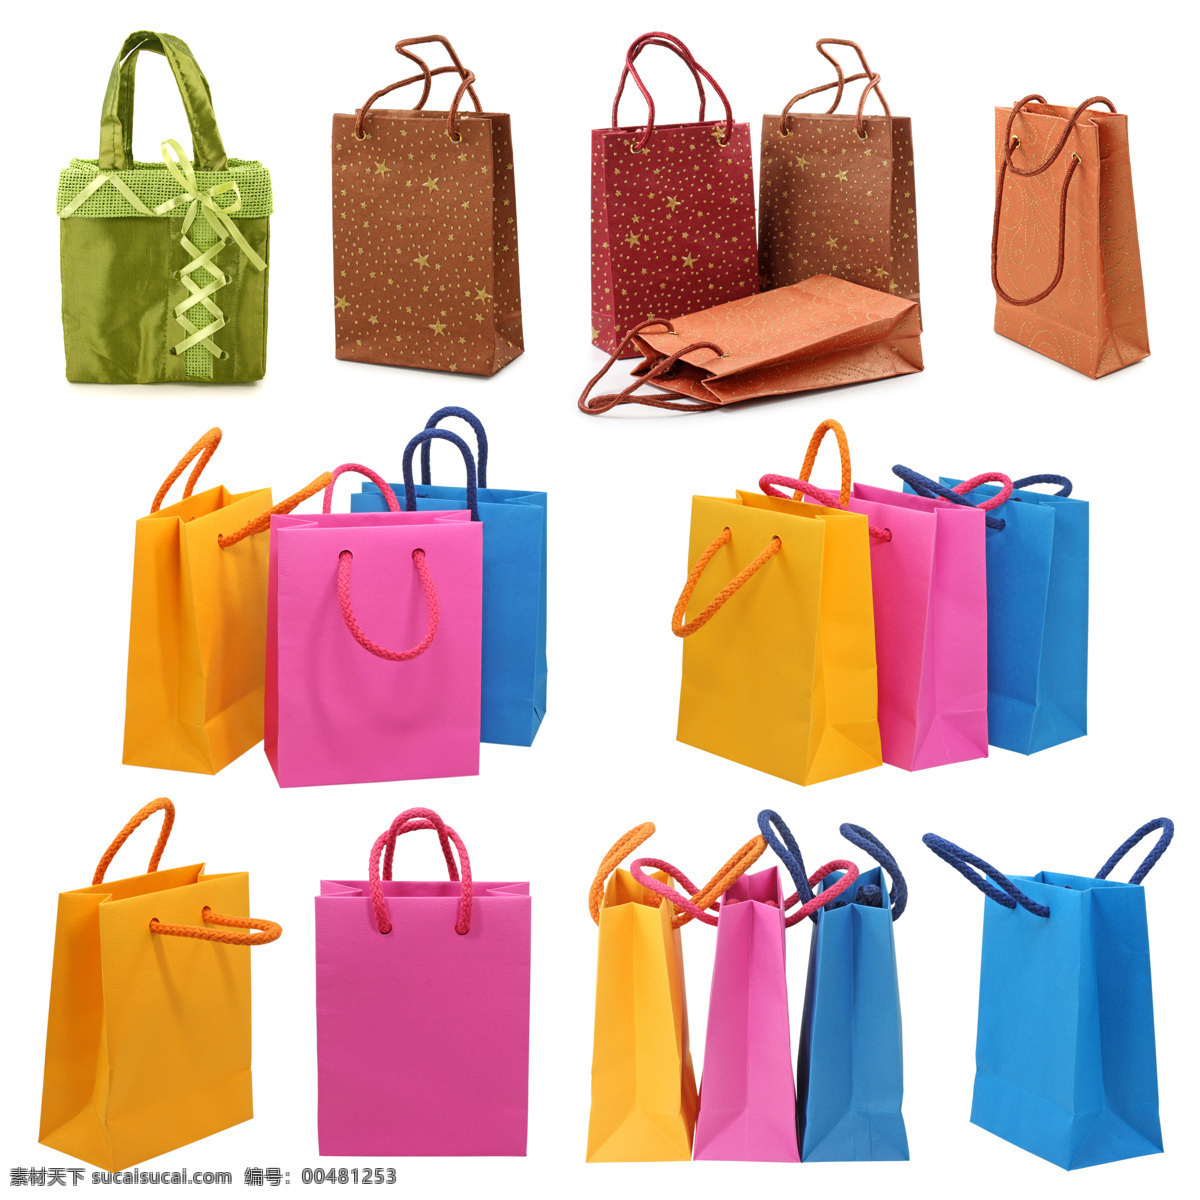 空白 彩色 手提袋 高清 shopping 包装袋 高清图片 购物袋 环保袋 手挽袋 五颜六色 纸袋 bag 肥牛牛